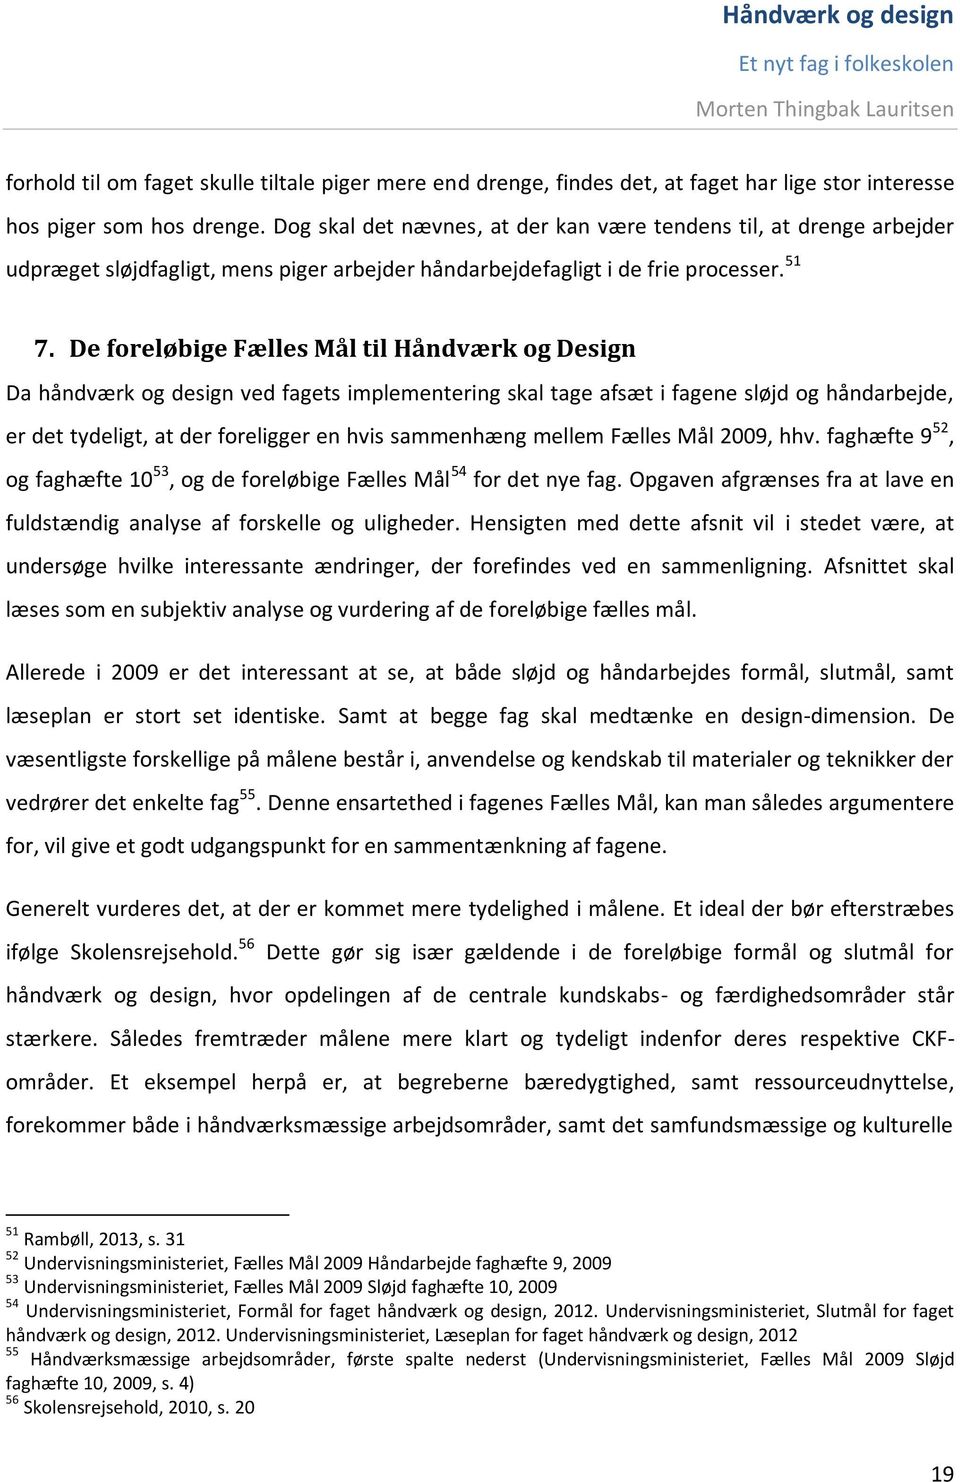 Bachelor 2014, I linjefaget Materiel Design. Håndværk og design. - Et nyt  fag i folkeskolen. Af Morten Thingbak Lauritsen - PDF Free Download